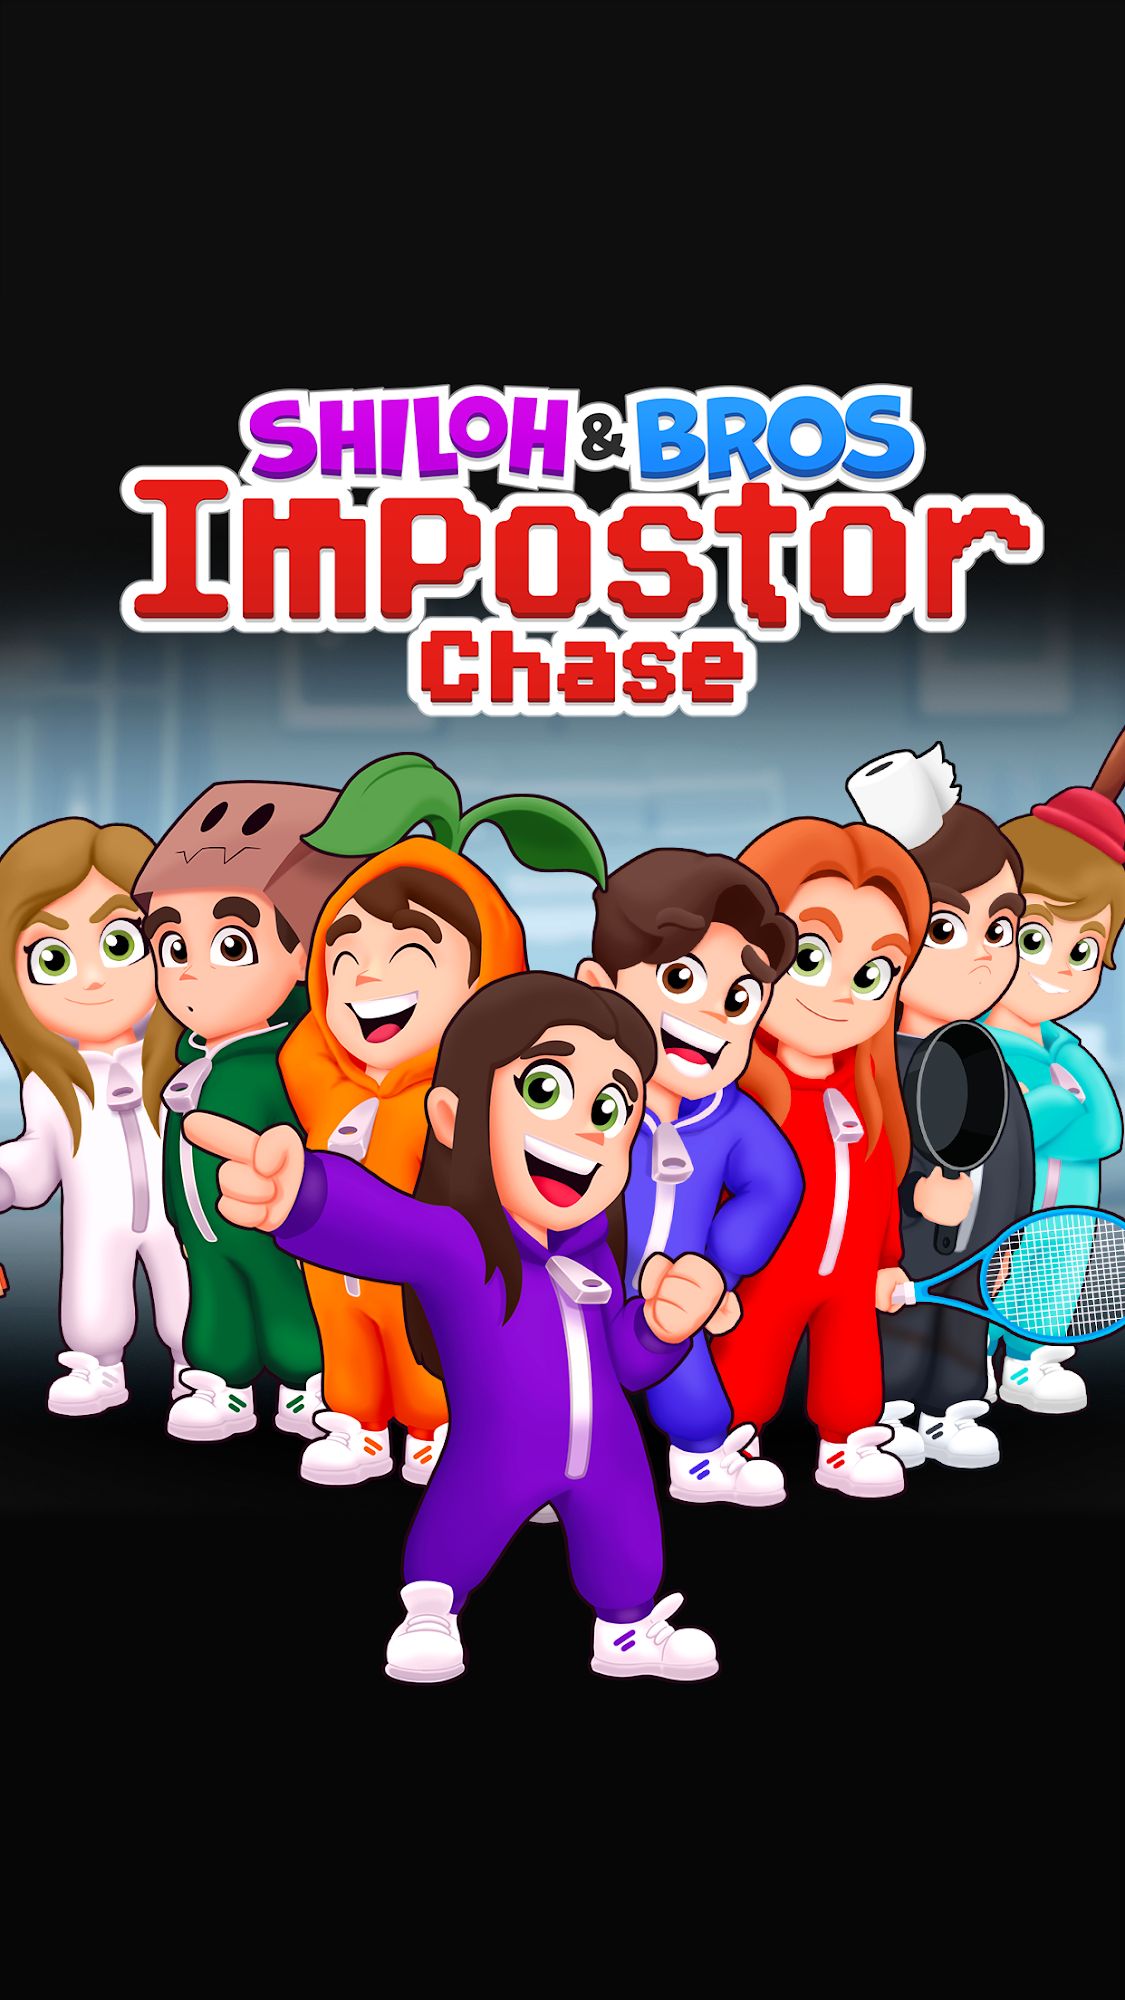 Télécharger Shiloh & Bros Impostor Chase pour Android gratuit.